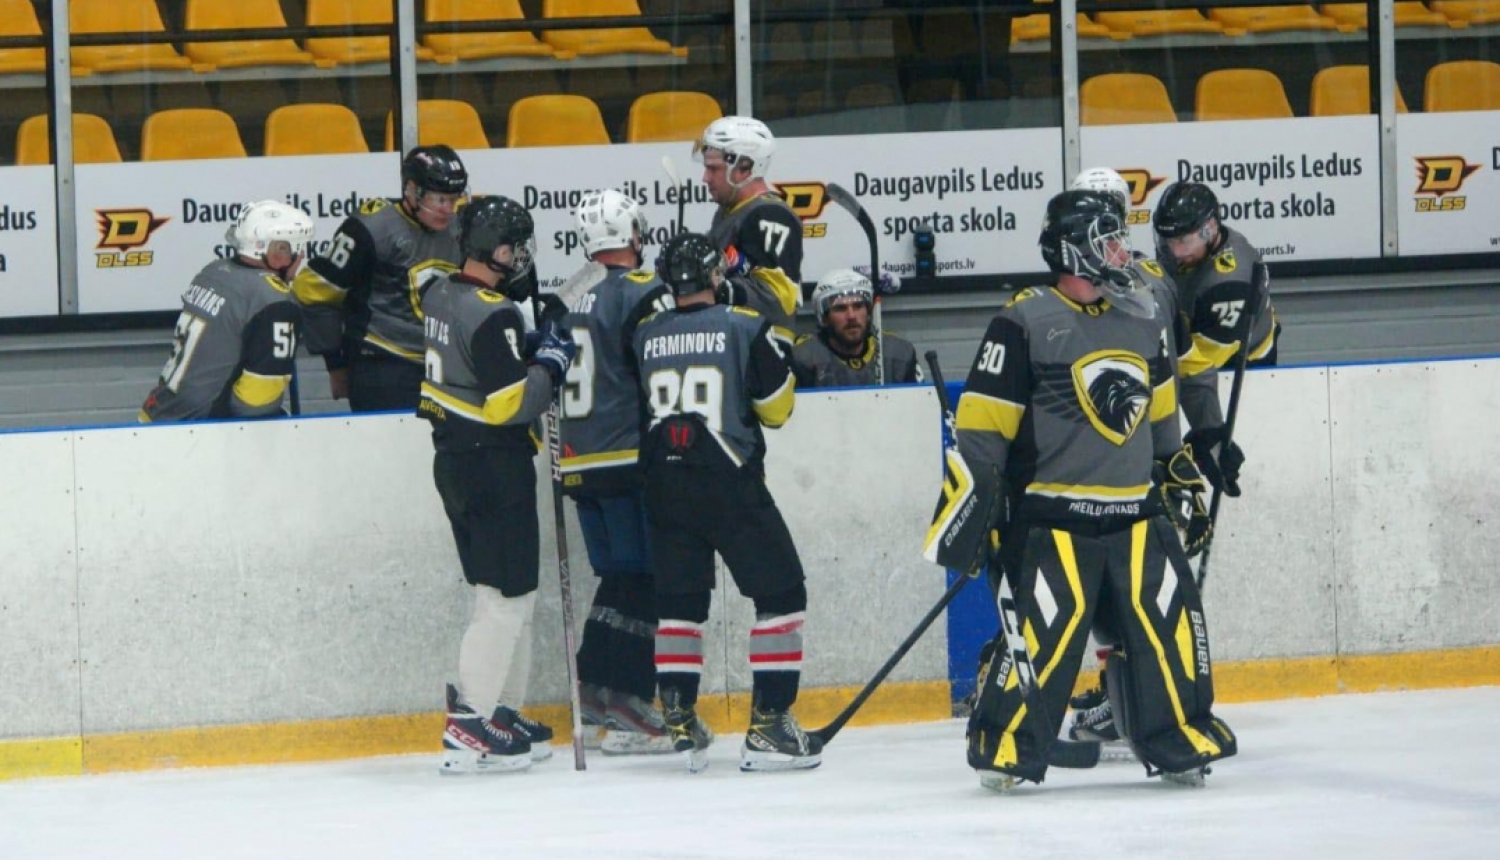 Preiļu hokeja komanda startē Daugavpils atklātajā hokeja čempionātā